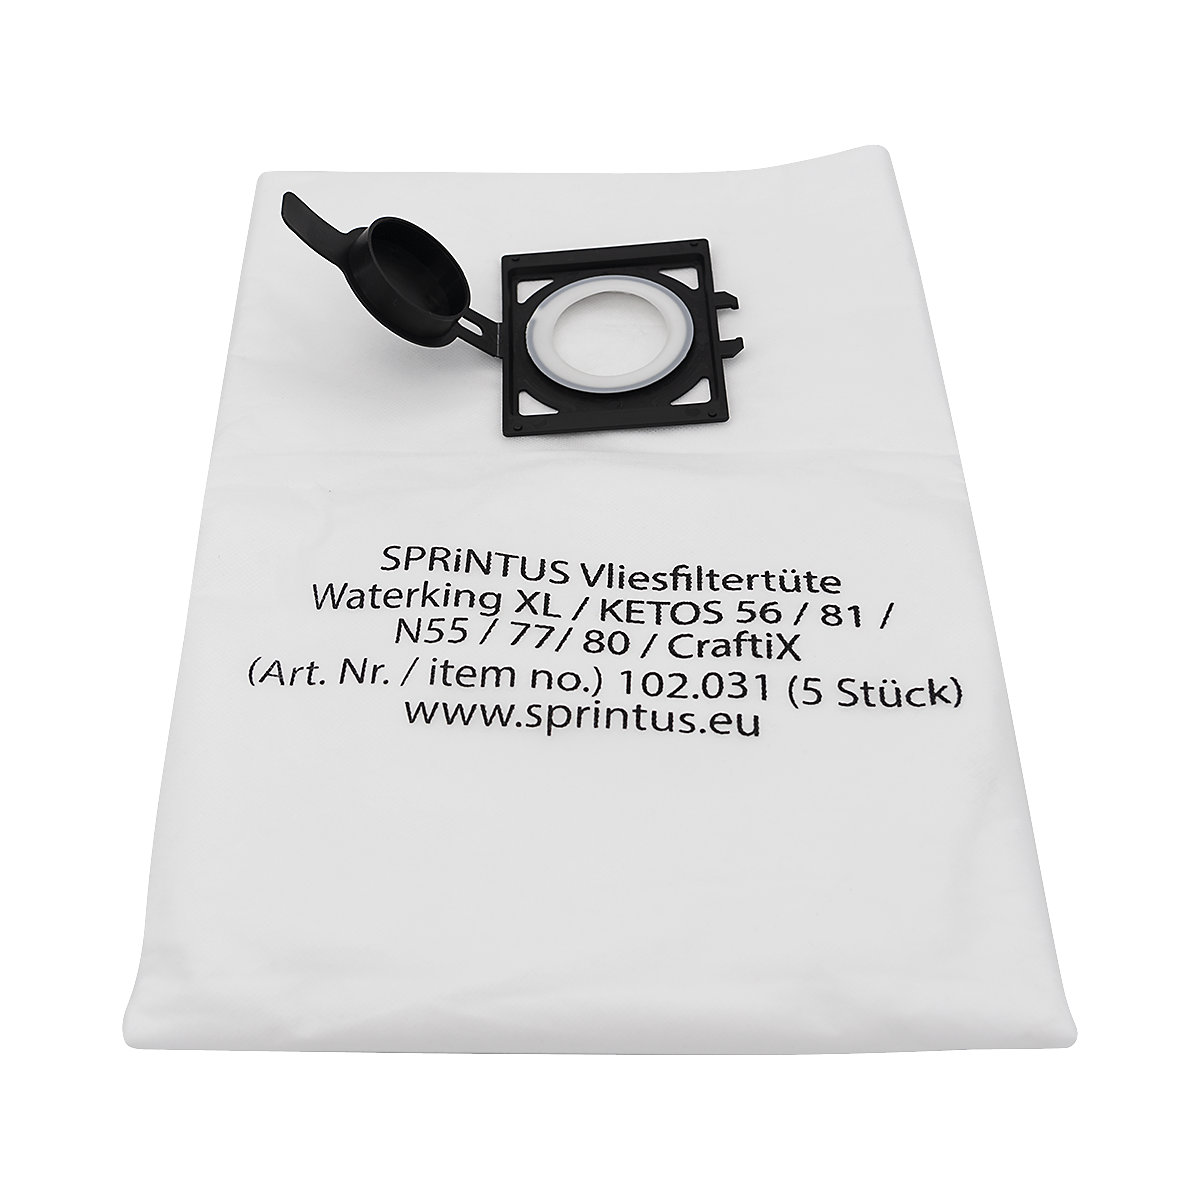 Sacchi-filtro in tessuto-non-tessuto, conf. da 5 pz. – Sprintus